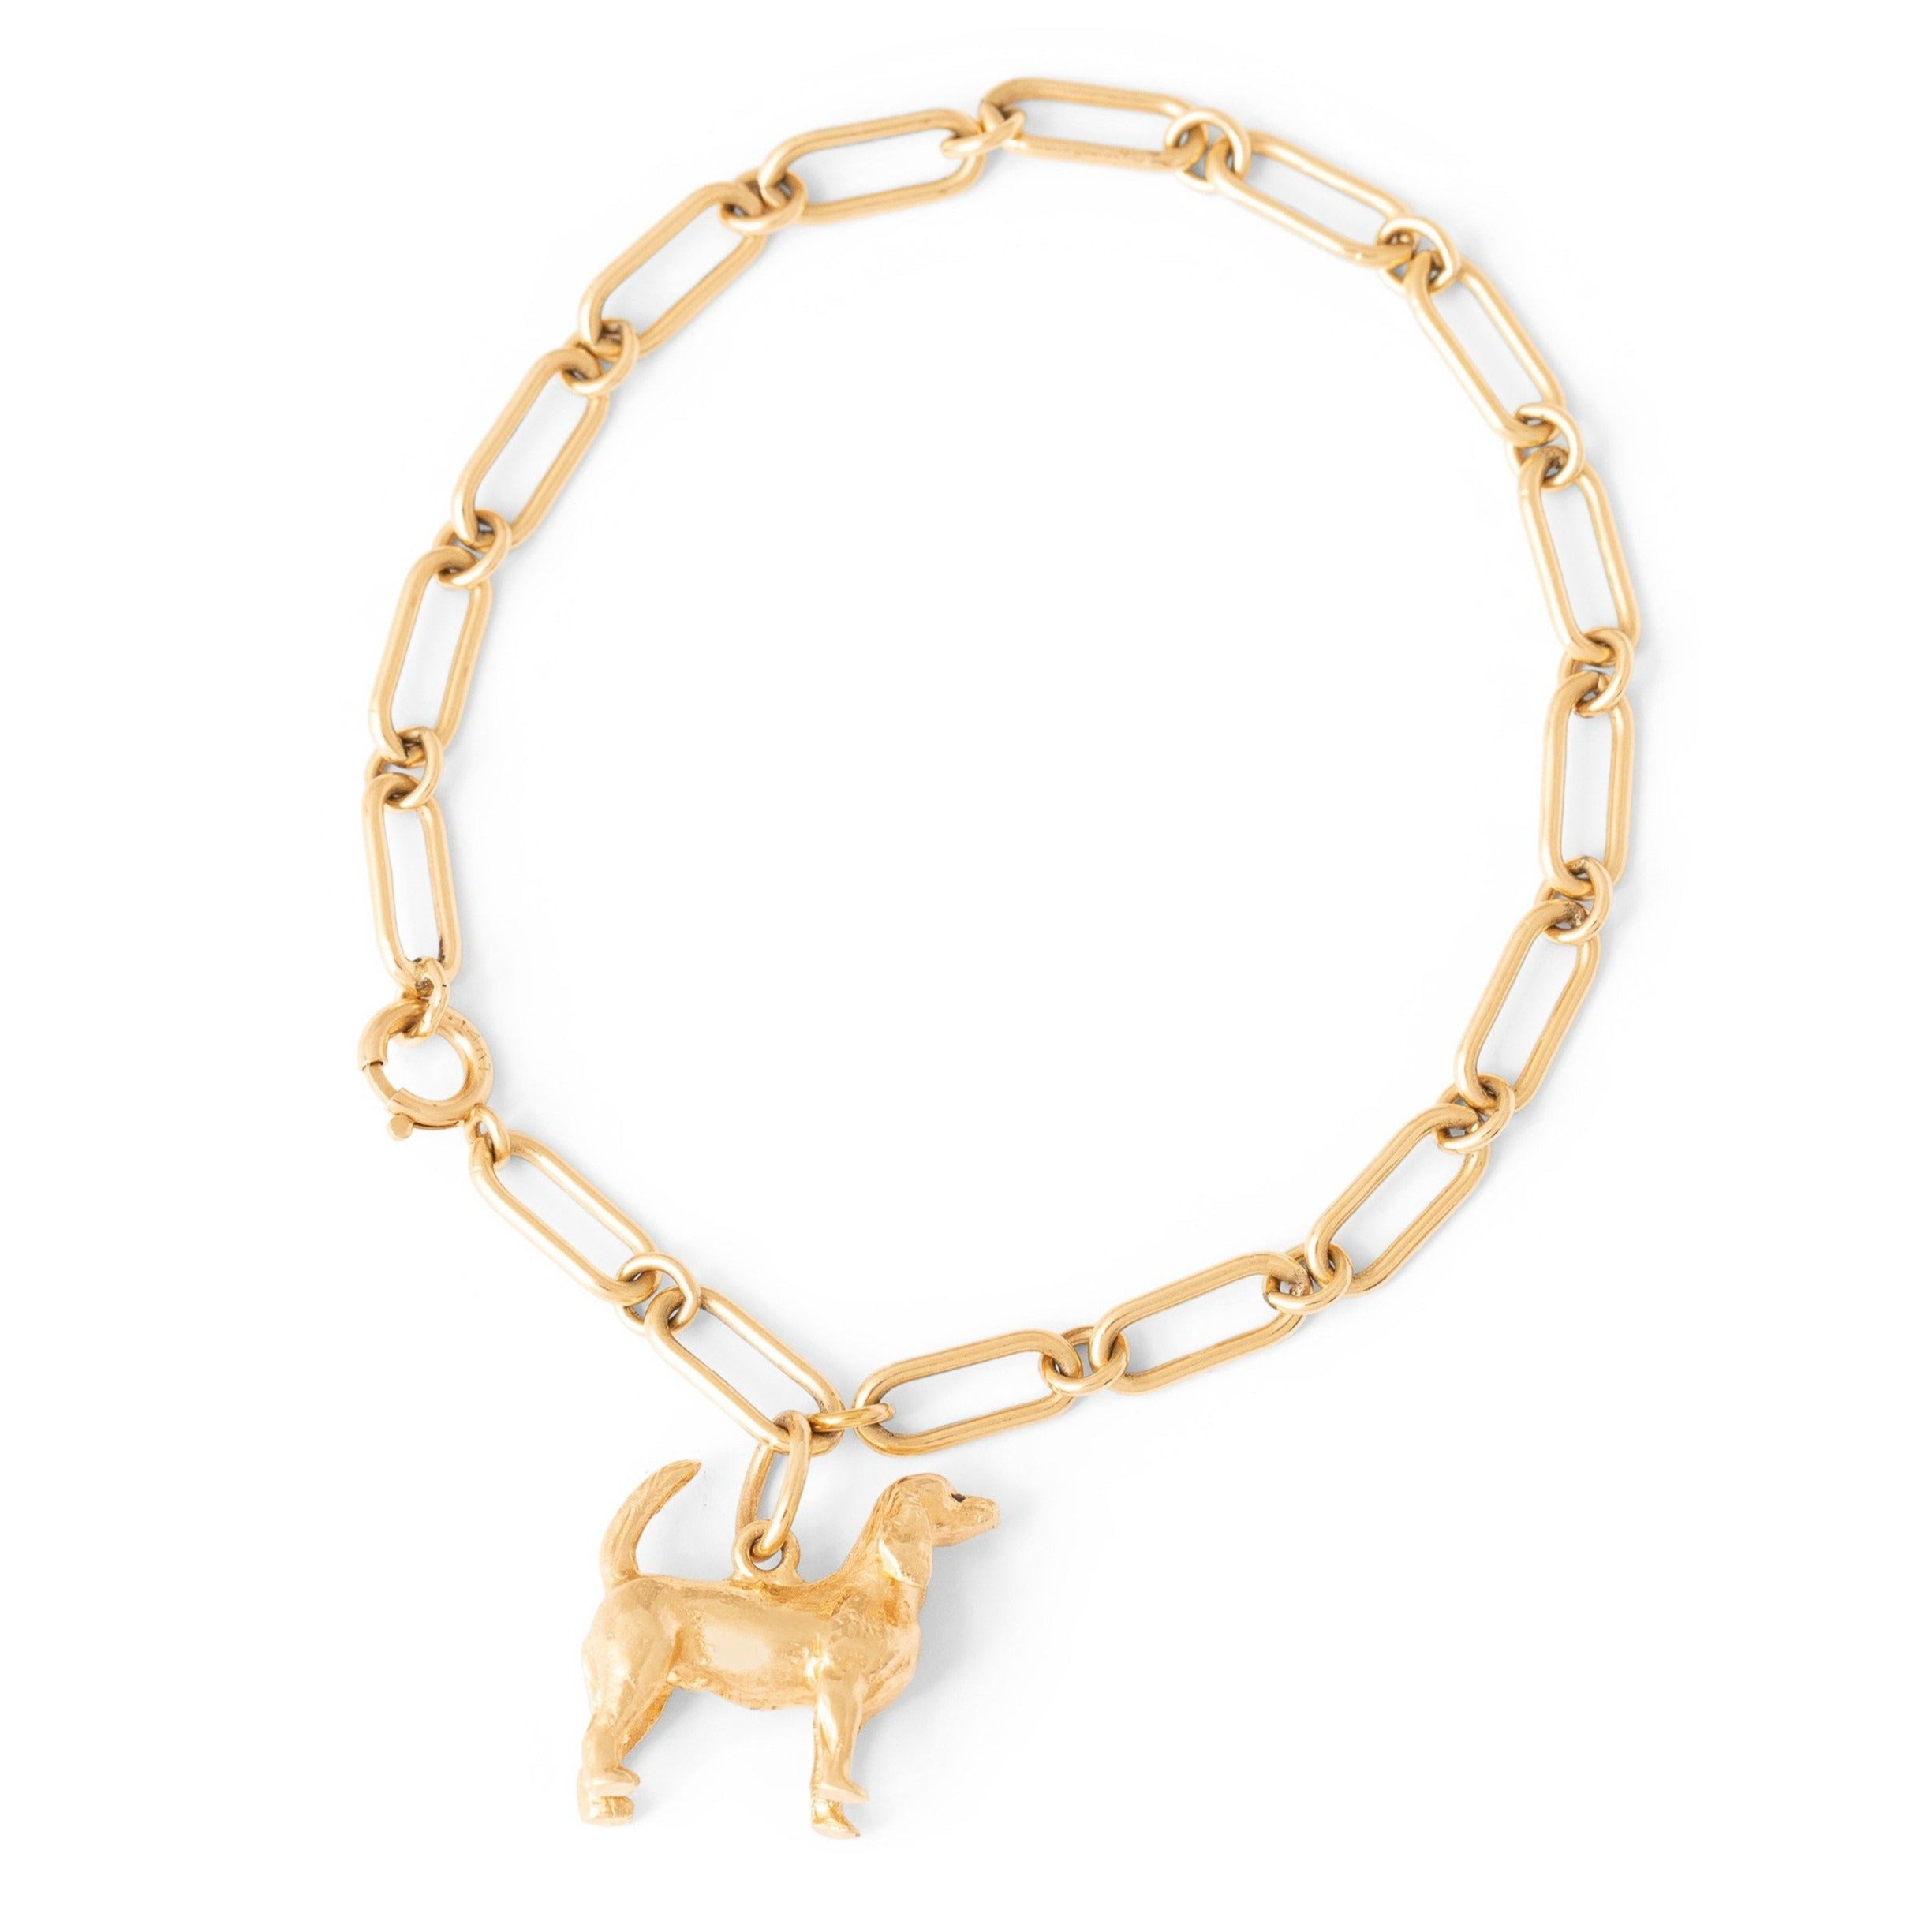 14k Gold Link Bracelet With Dog Charm